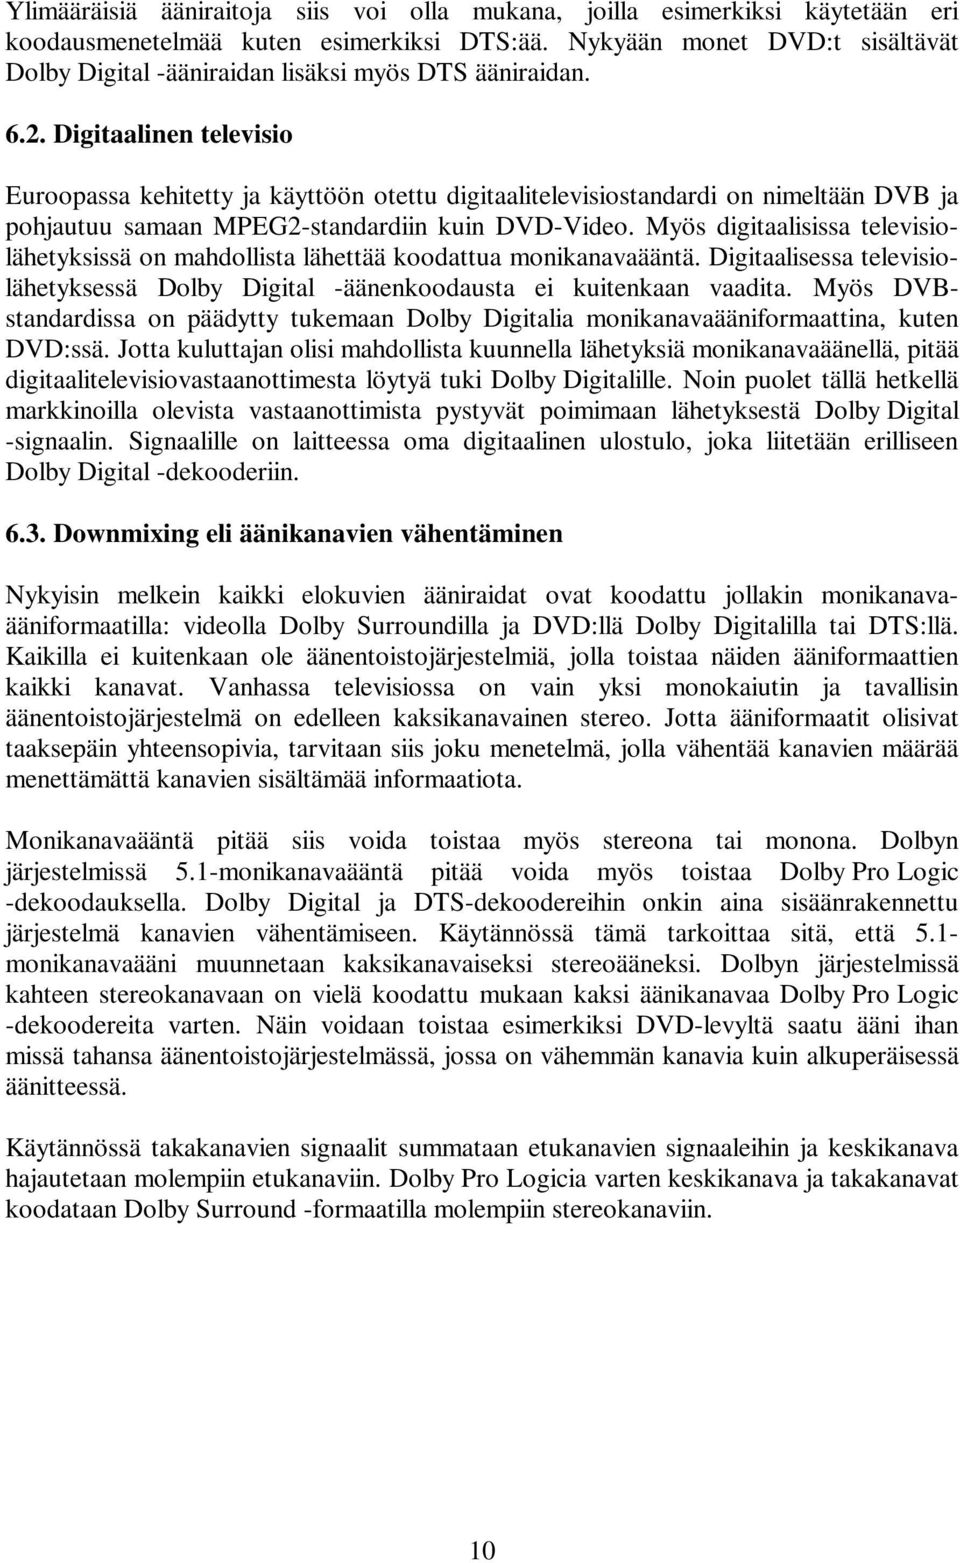 Digitaalinen televisio Euroopassa kehitetty ja käyttöön otettu digitaalitelevisiostandardi on nimeltään DVB ja pohjautuu samaan MPEG2-standardiin kuin DVD-Video.